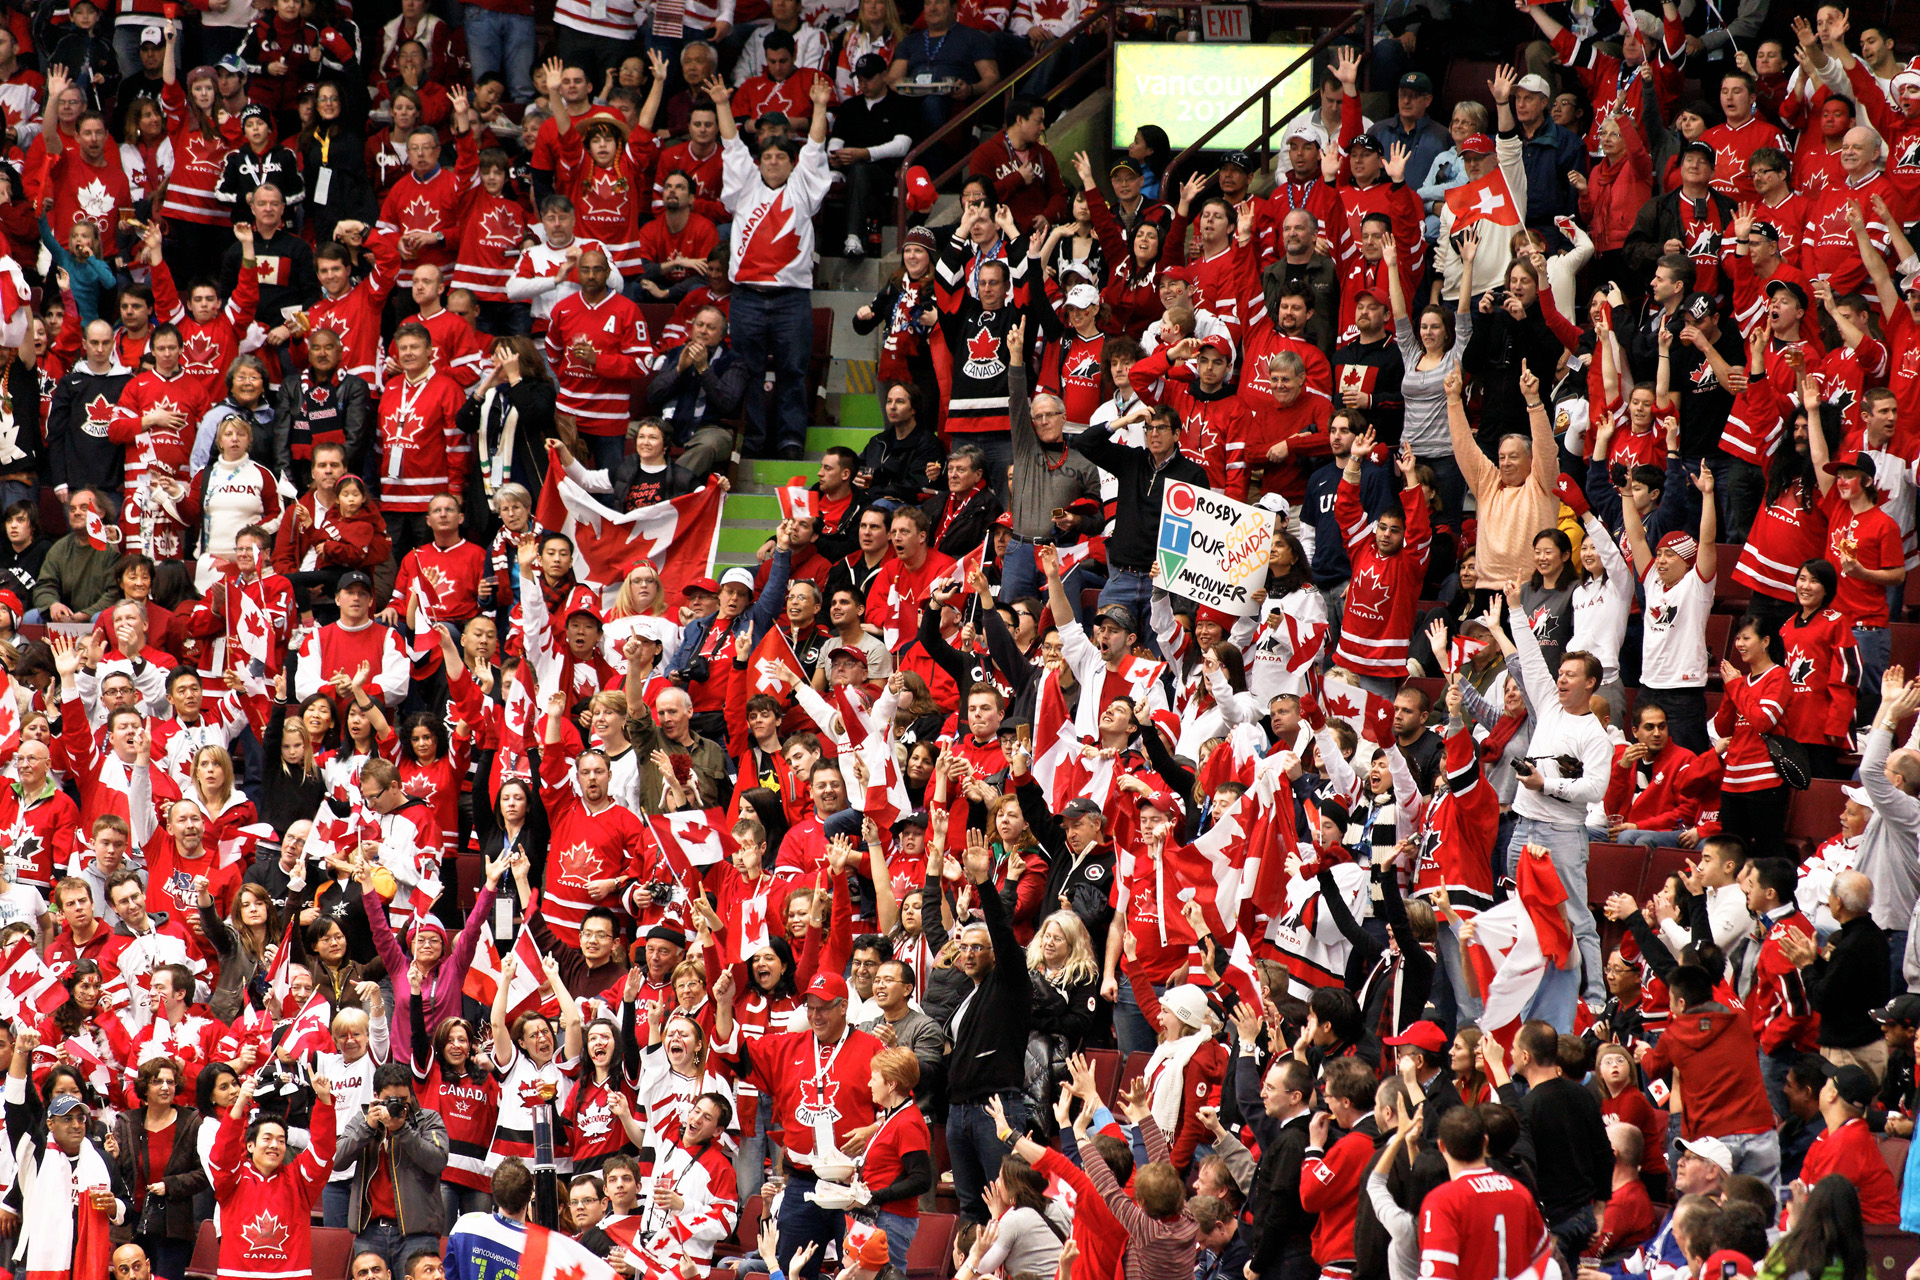 Una multitud de personas vestidas con camisetas canadienses rojas y blancas animan desde los asientos de la arena.